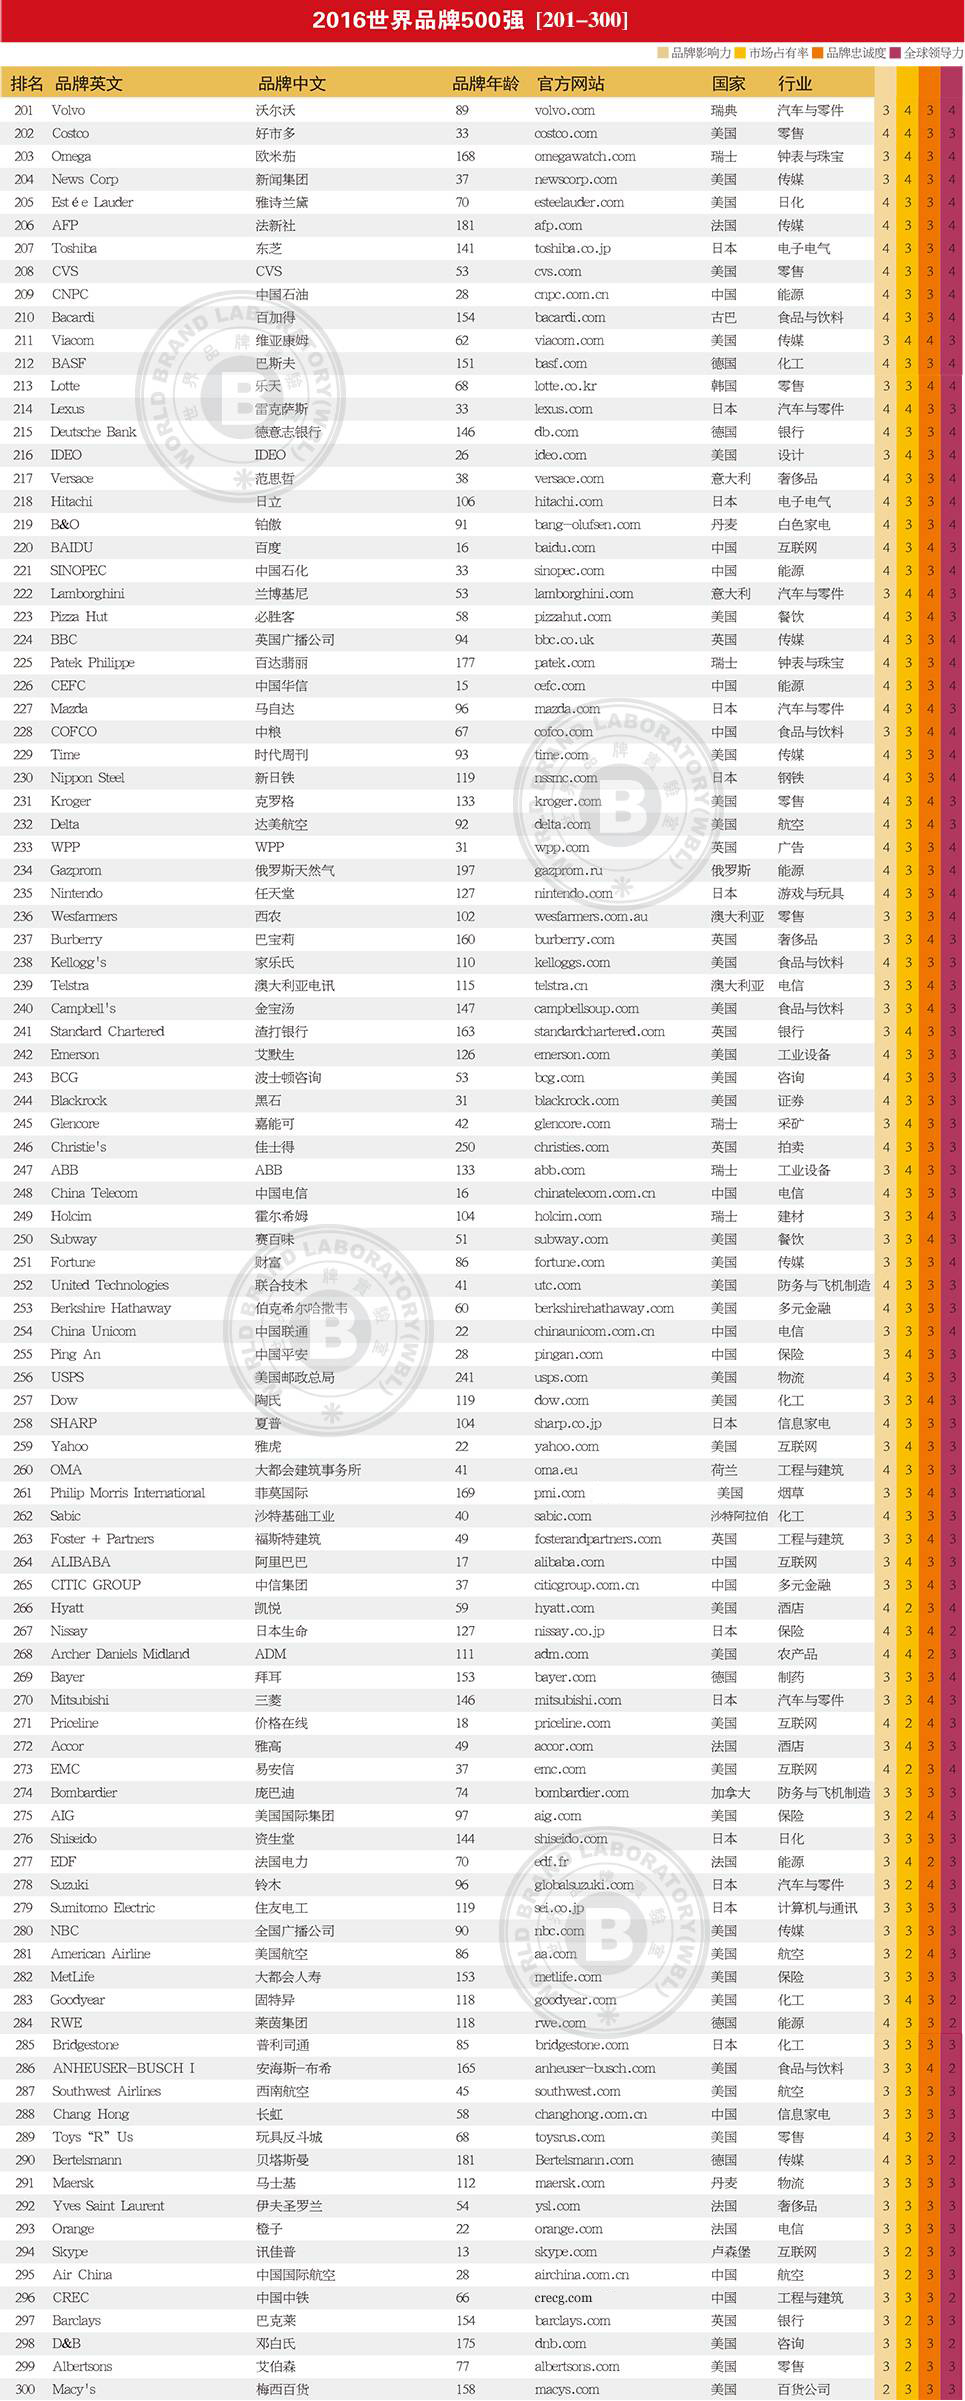 2016年世界品牌500强排行榜出炉:中国36个品